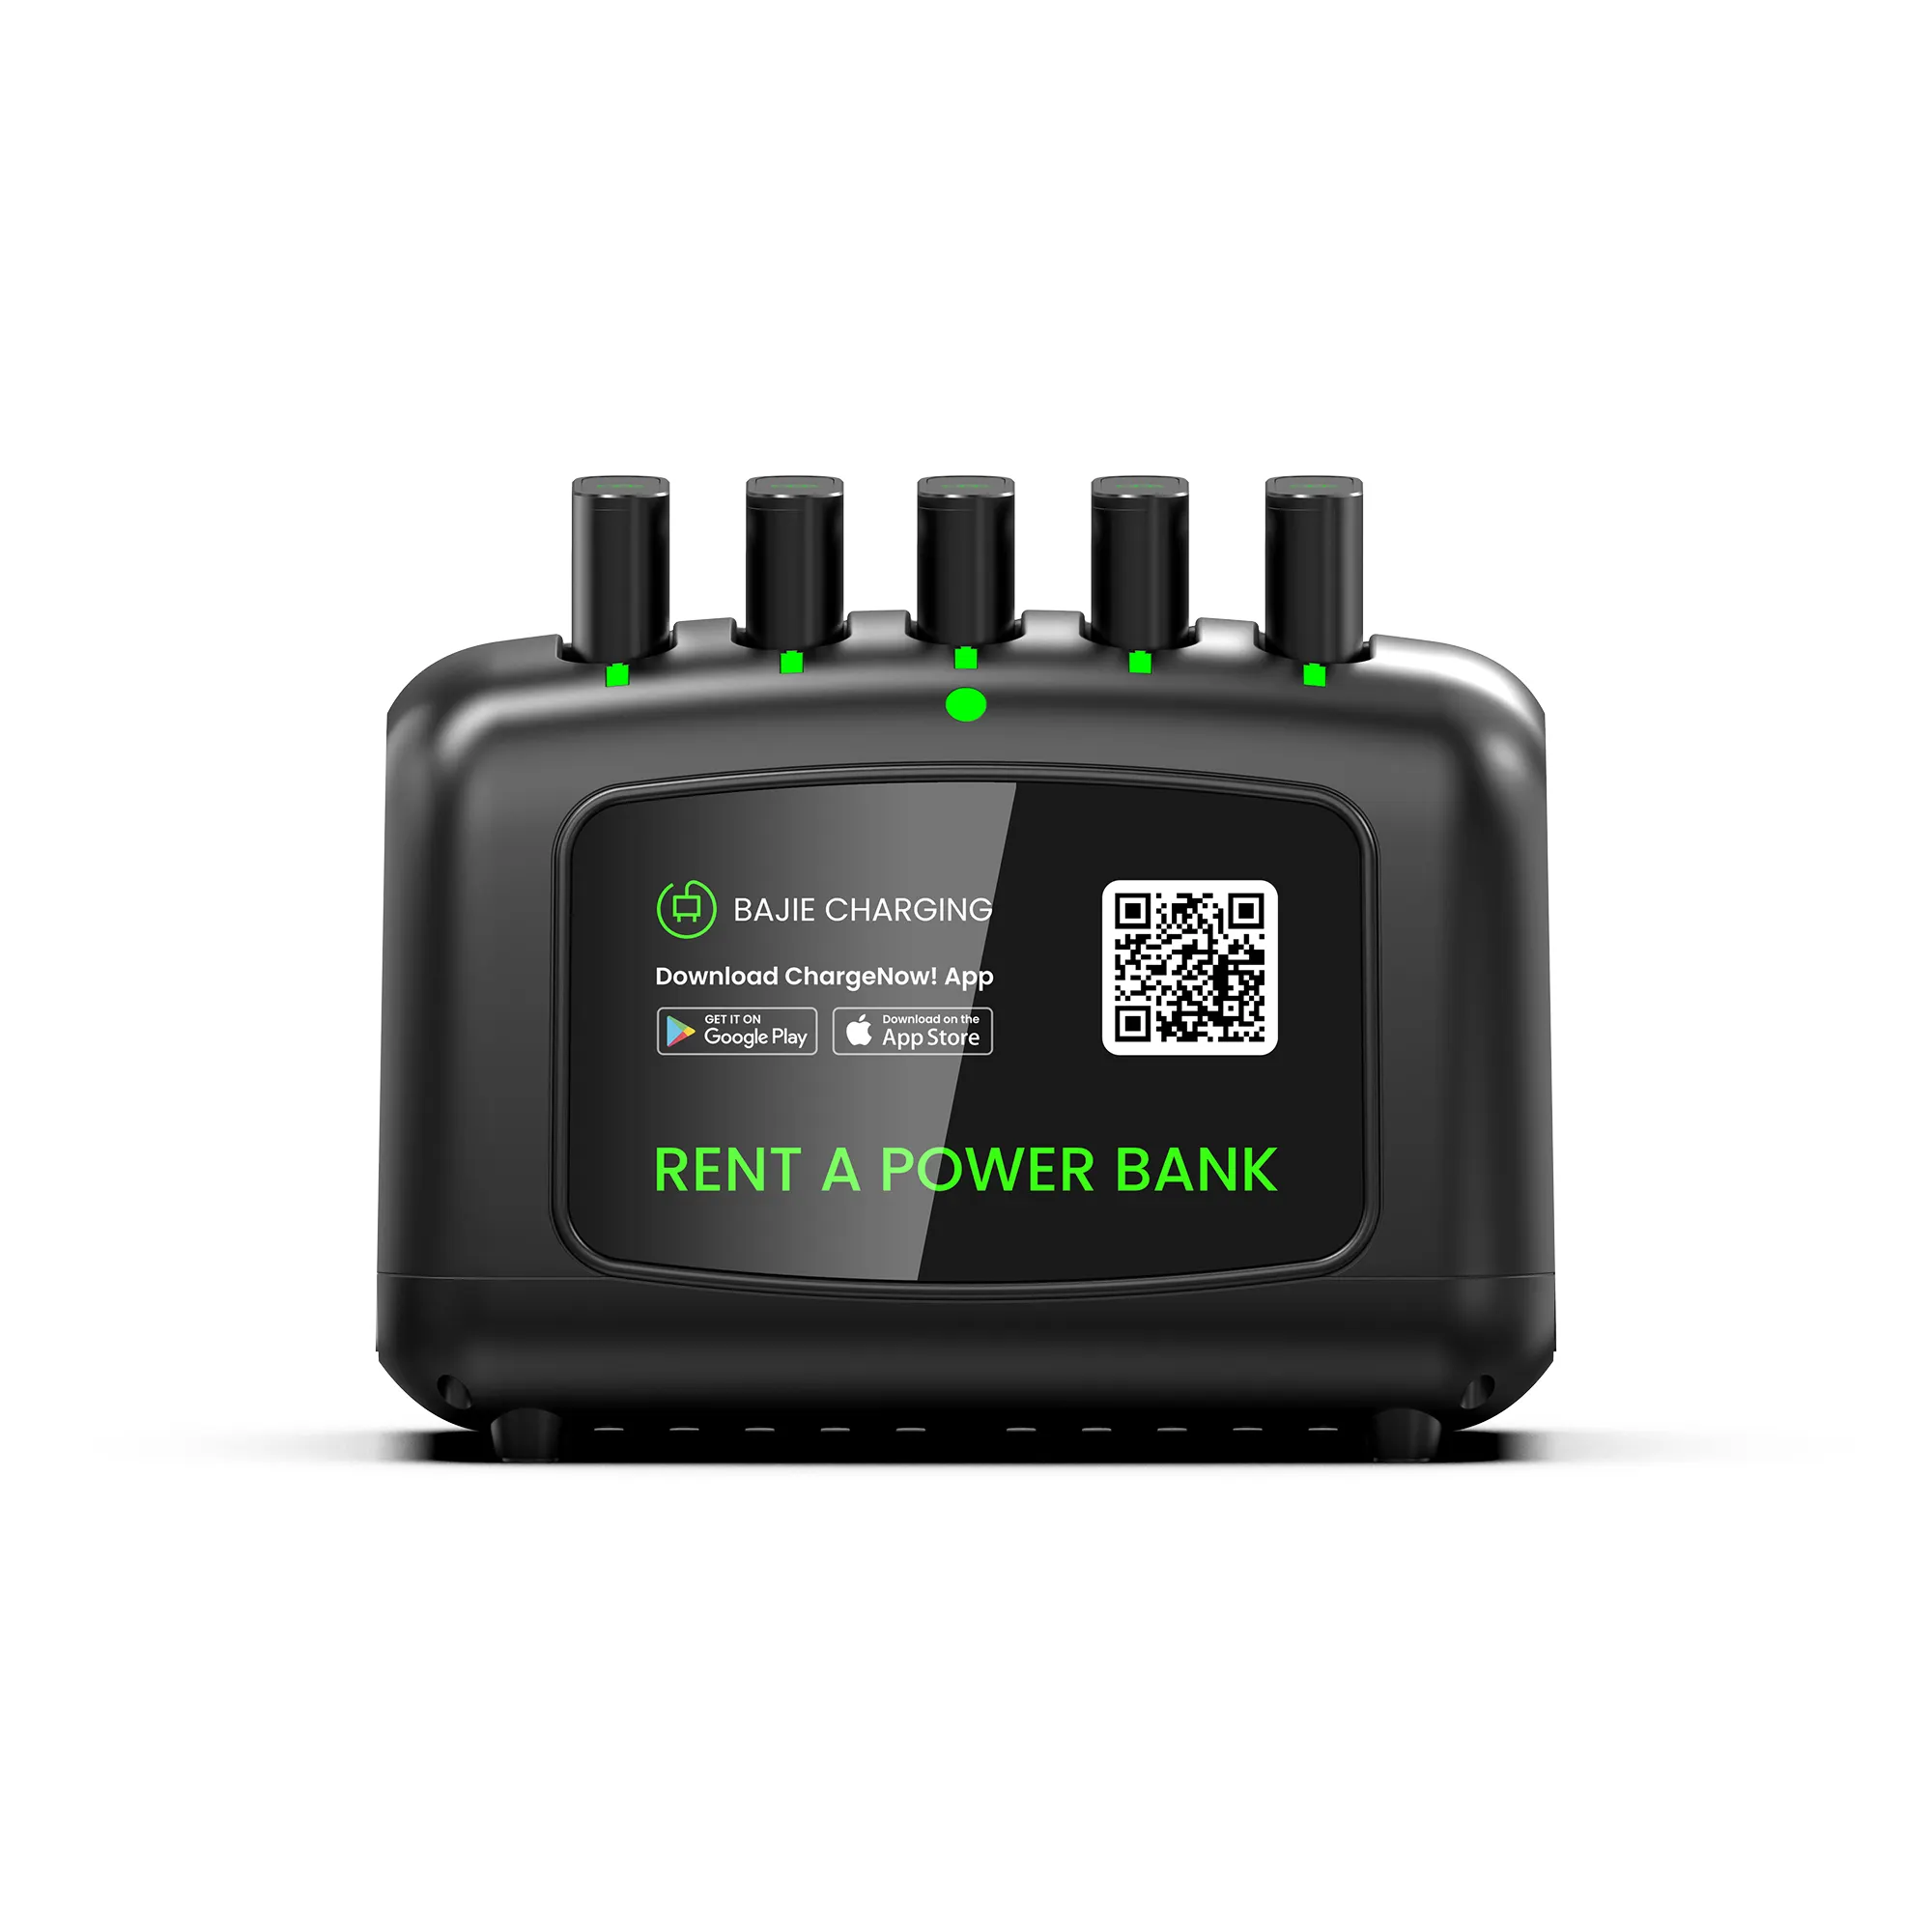 Qr kod tarama makinesi 5 yuva kiralama taşınabilir Powerbank şarj edilebilir pil banka paylaşımı istasyonu Compartilhar Banco De Energia